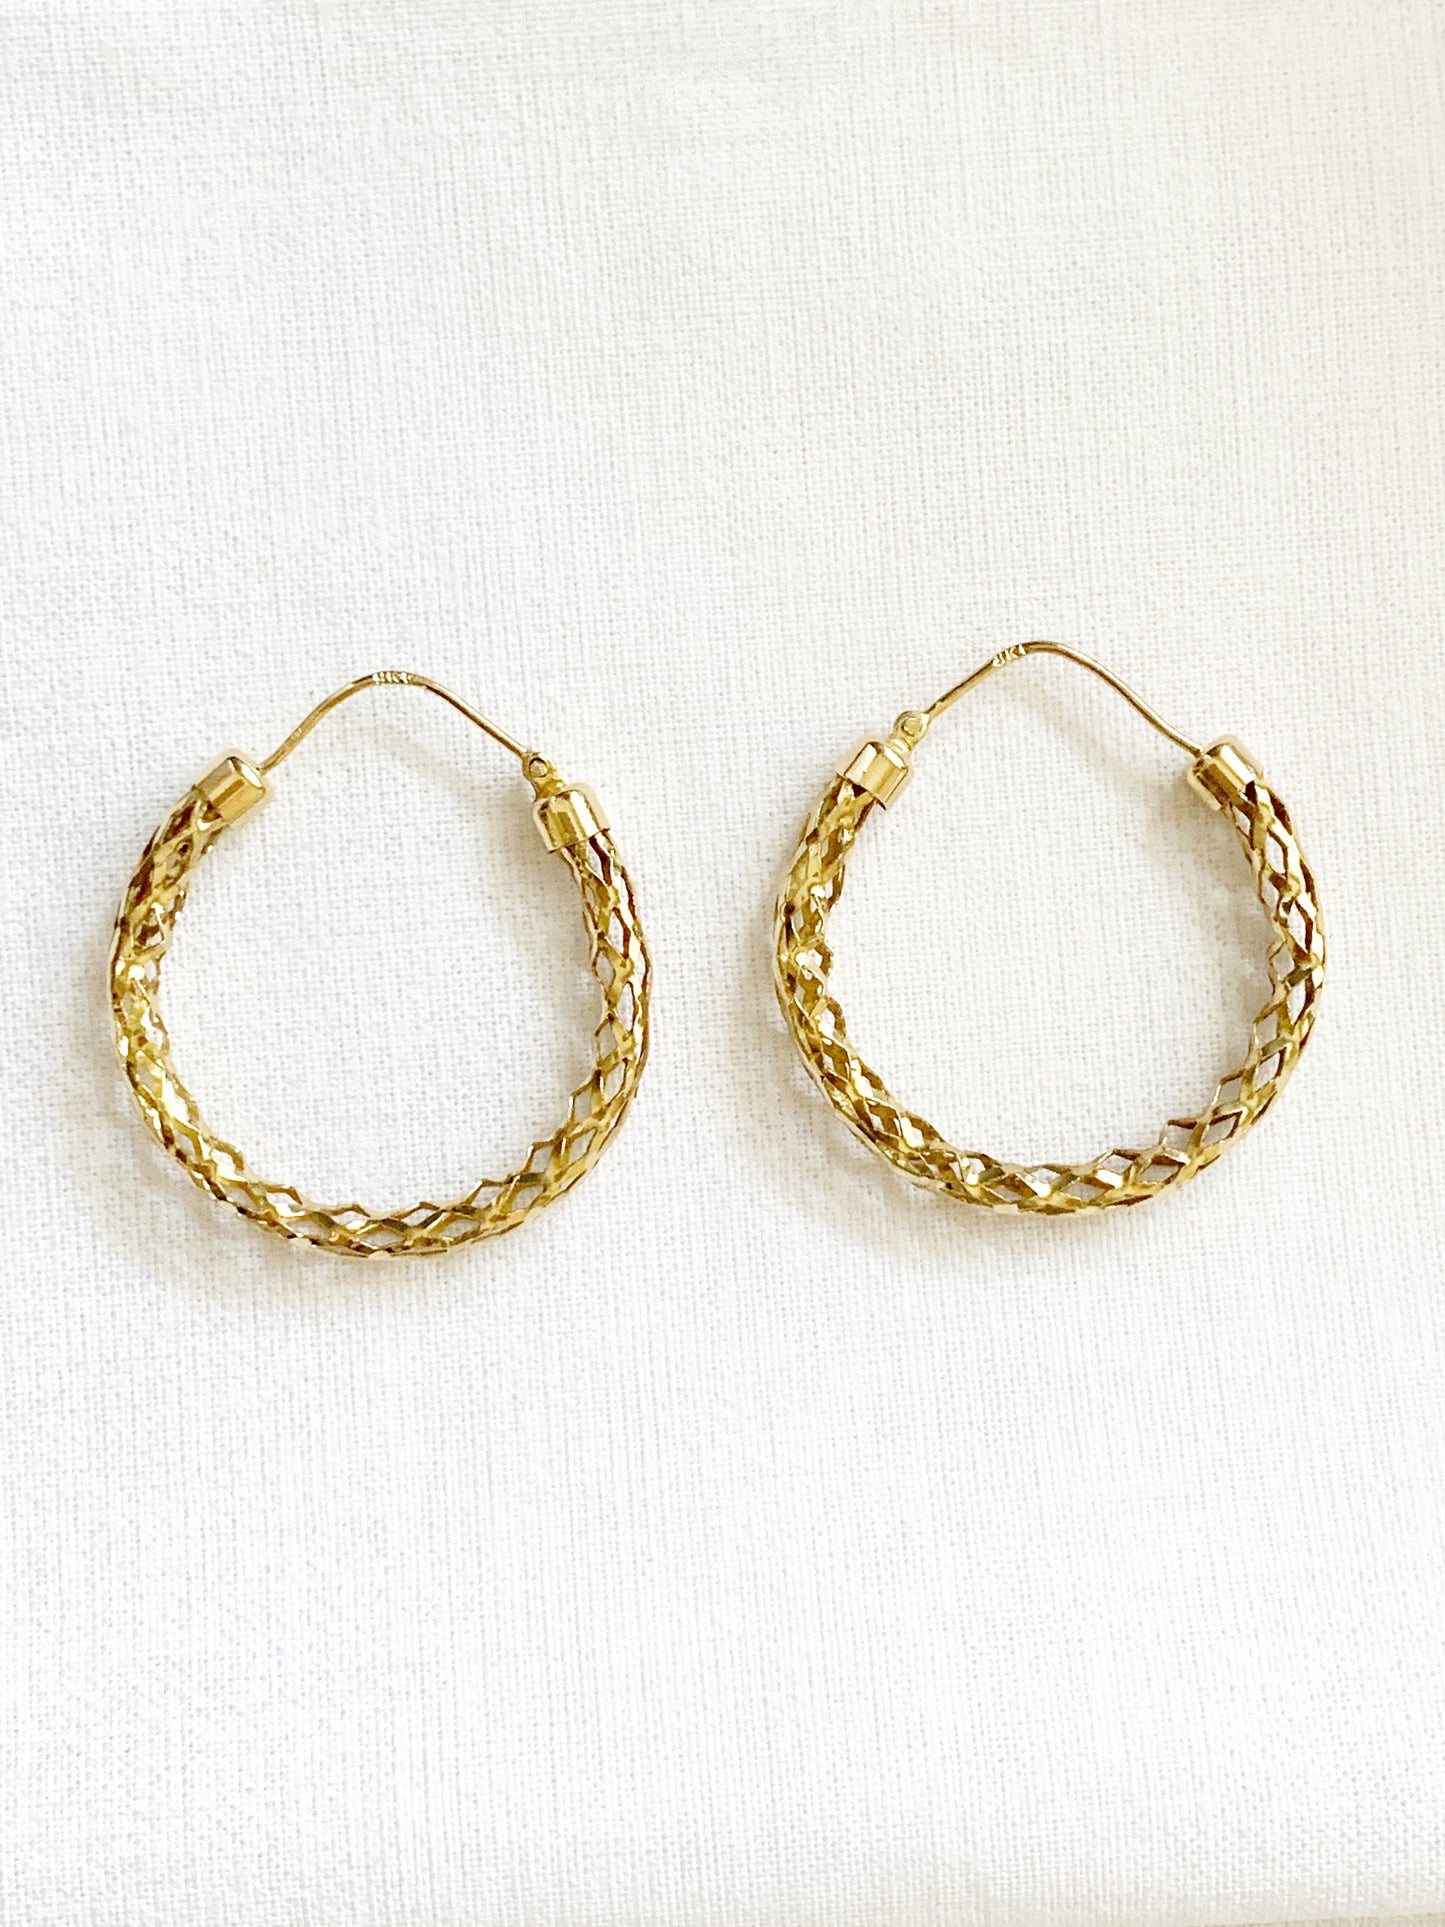 Vintage 9ct Gold Mesh Hoop Earrings 1986